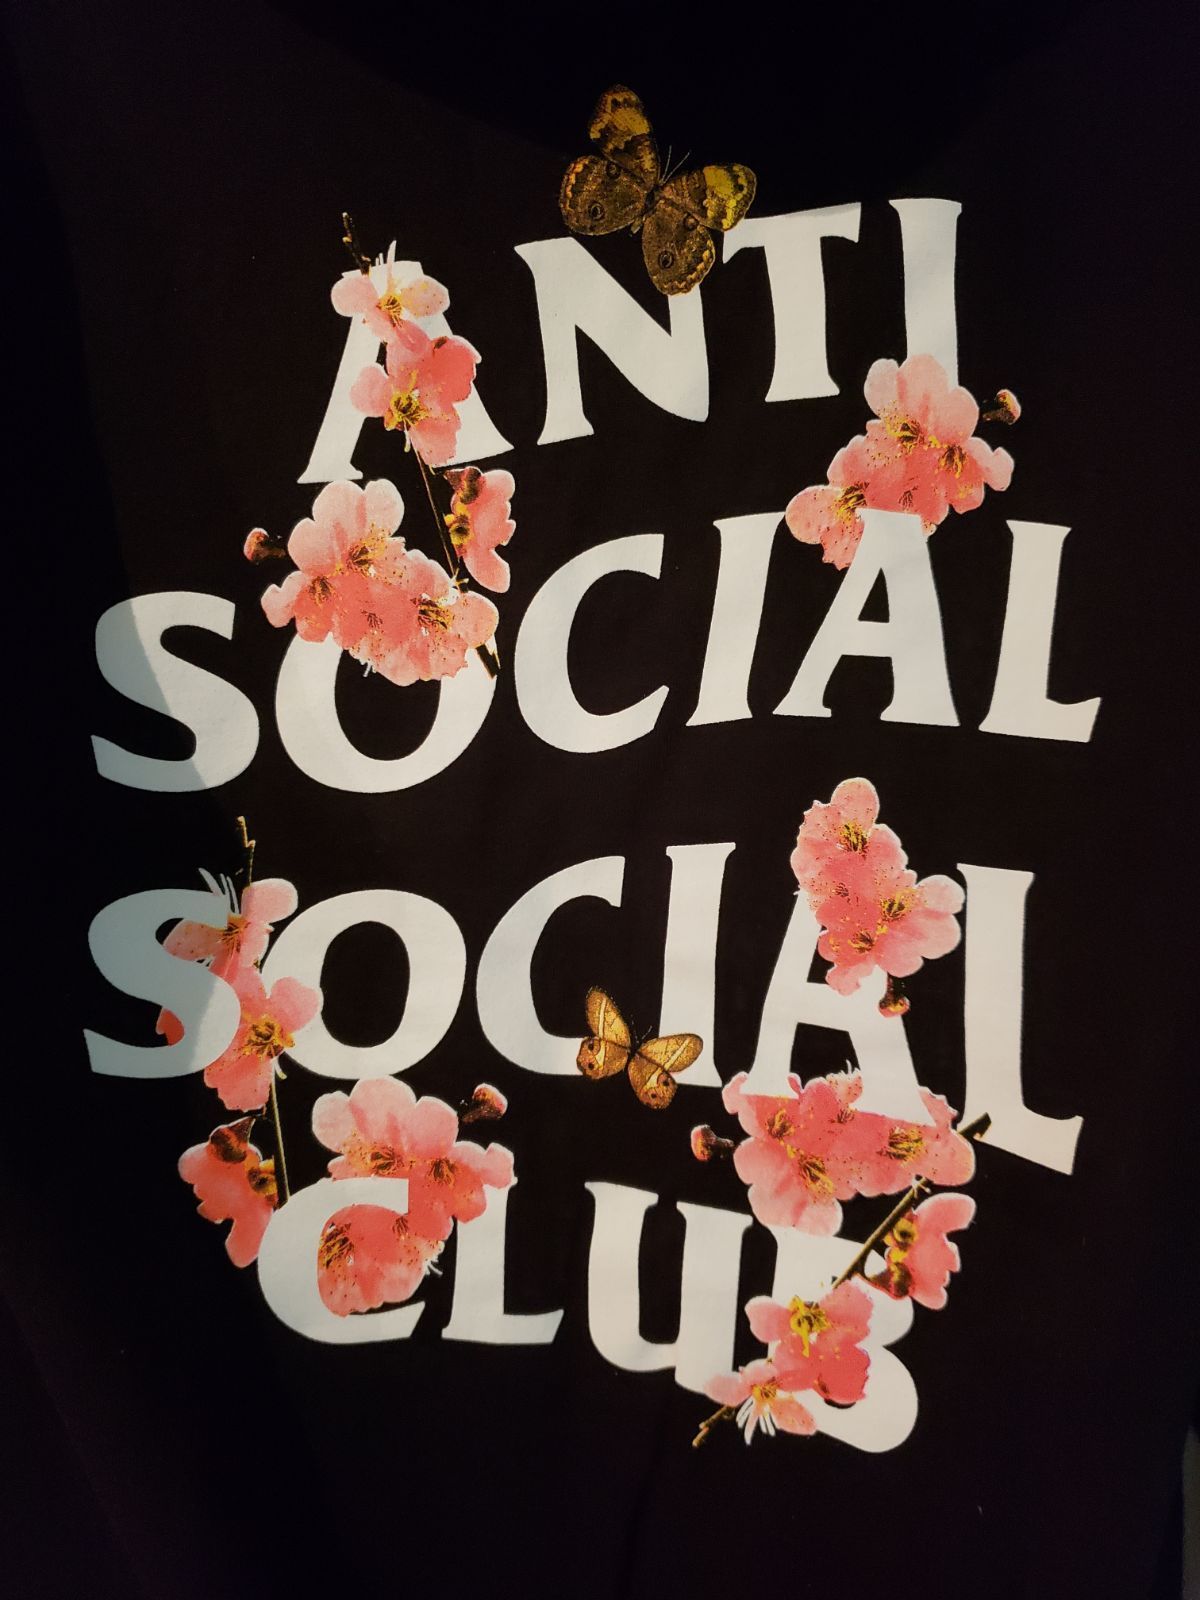 Floral Anti Social Social Club Hoodie on Mercari. Anti social, Anti social social club, Social club